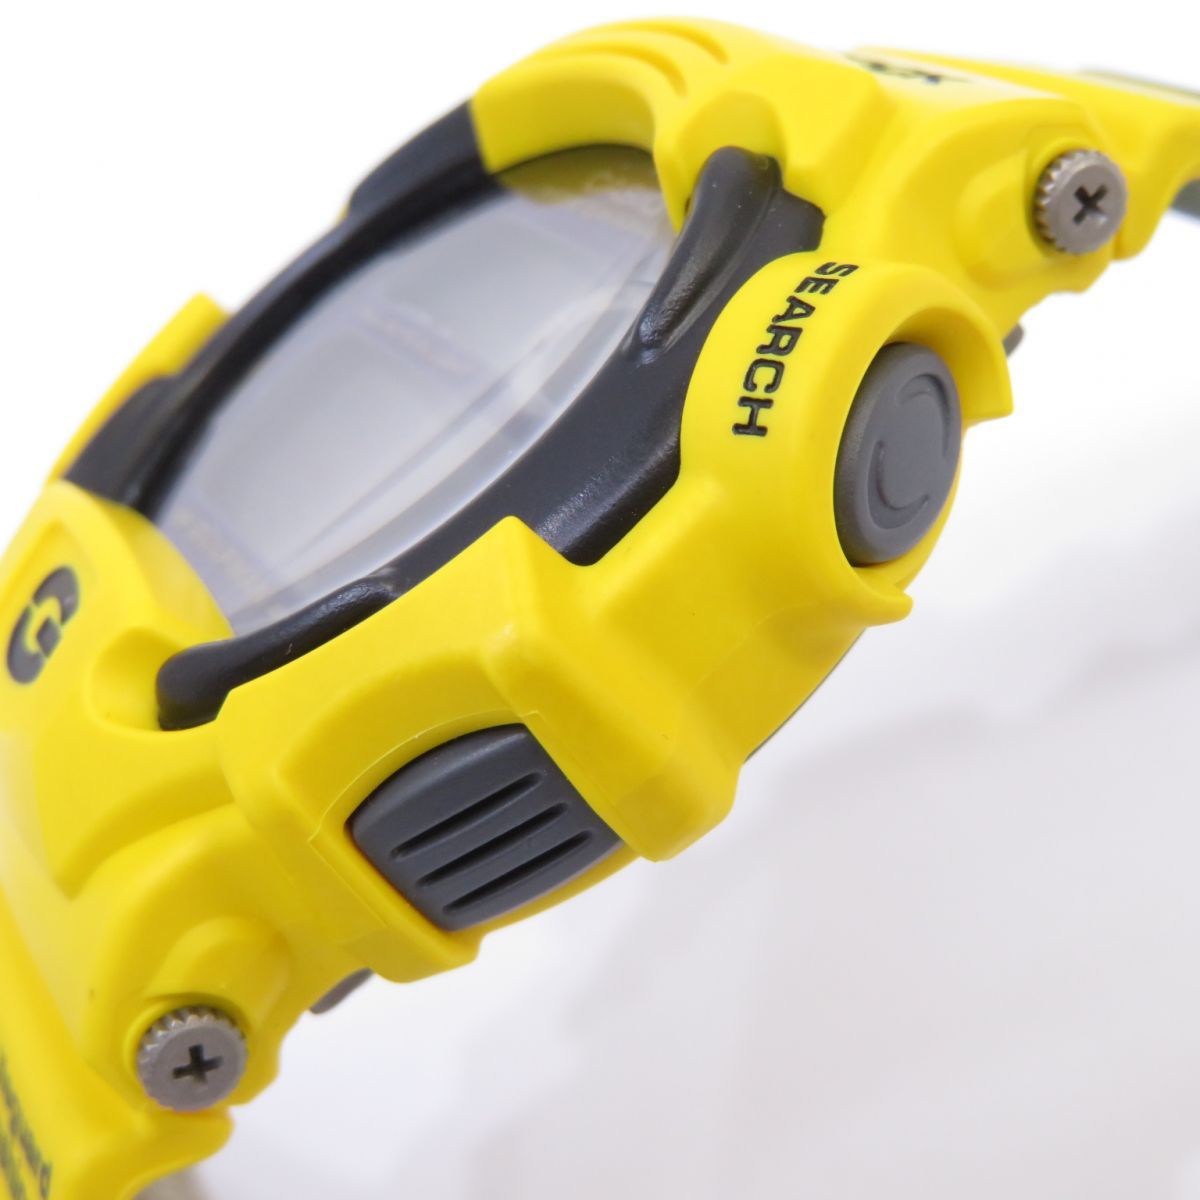 CASIO G-SHOCK 腕時計 DW-9700UL-9T ガルフマン 黄色